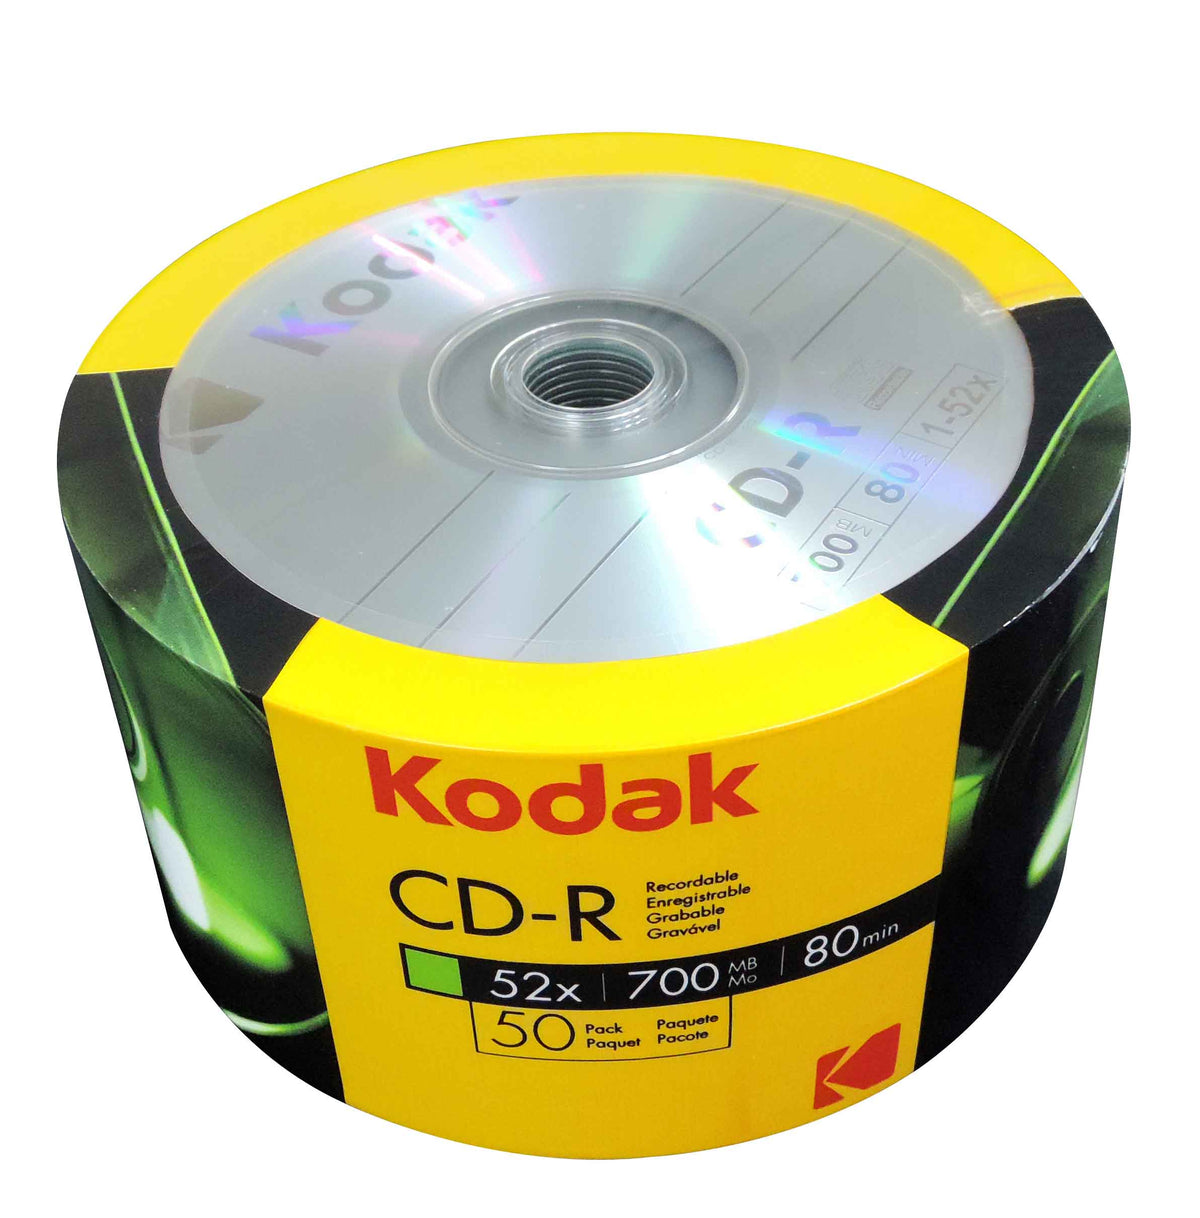 Kodak Cd R 52x 700mb 80 Min 50 Pack Cd Kd 50 Digitek Trading Ltd